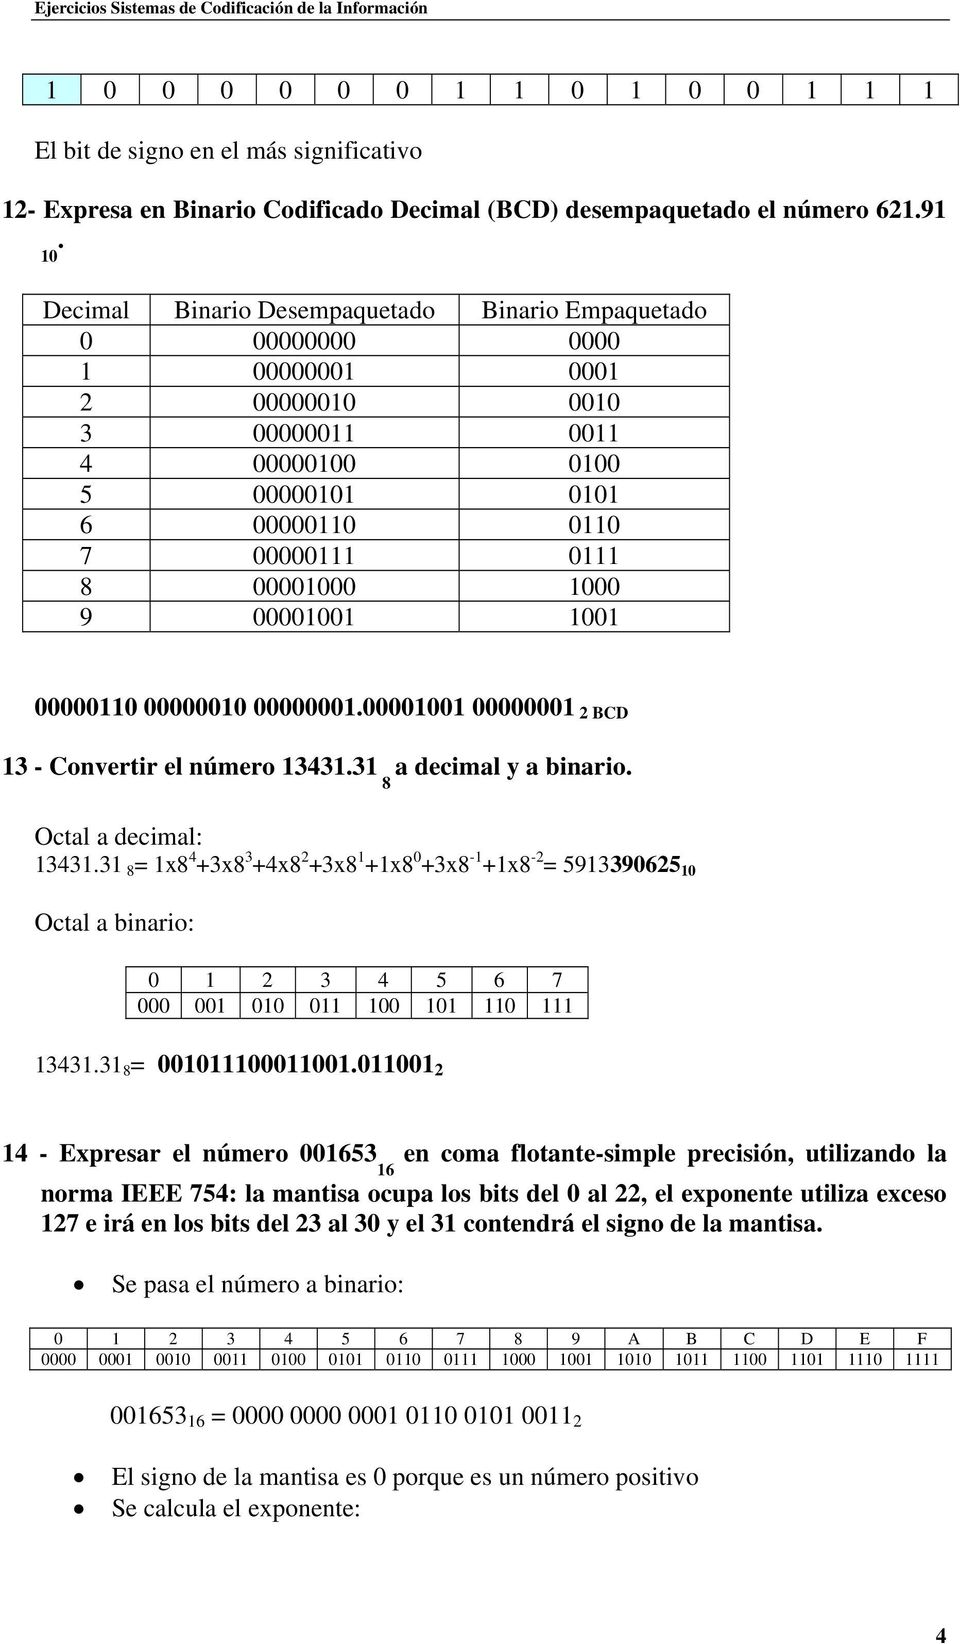 5913390625 Octal a binario: 0 1 2 3 4 5 6 7 000 001 0 011 0 1 1 111 1343131 = 00110010101 2 14 - Expresar el número 0053 en coma flotante-simple precisión, utilizando la 127 e irá en los bits del 23